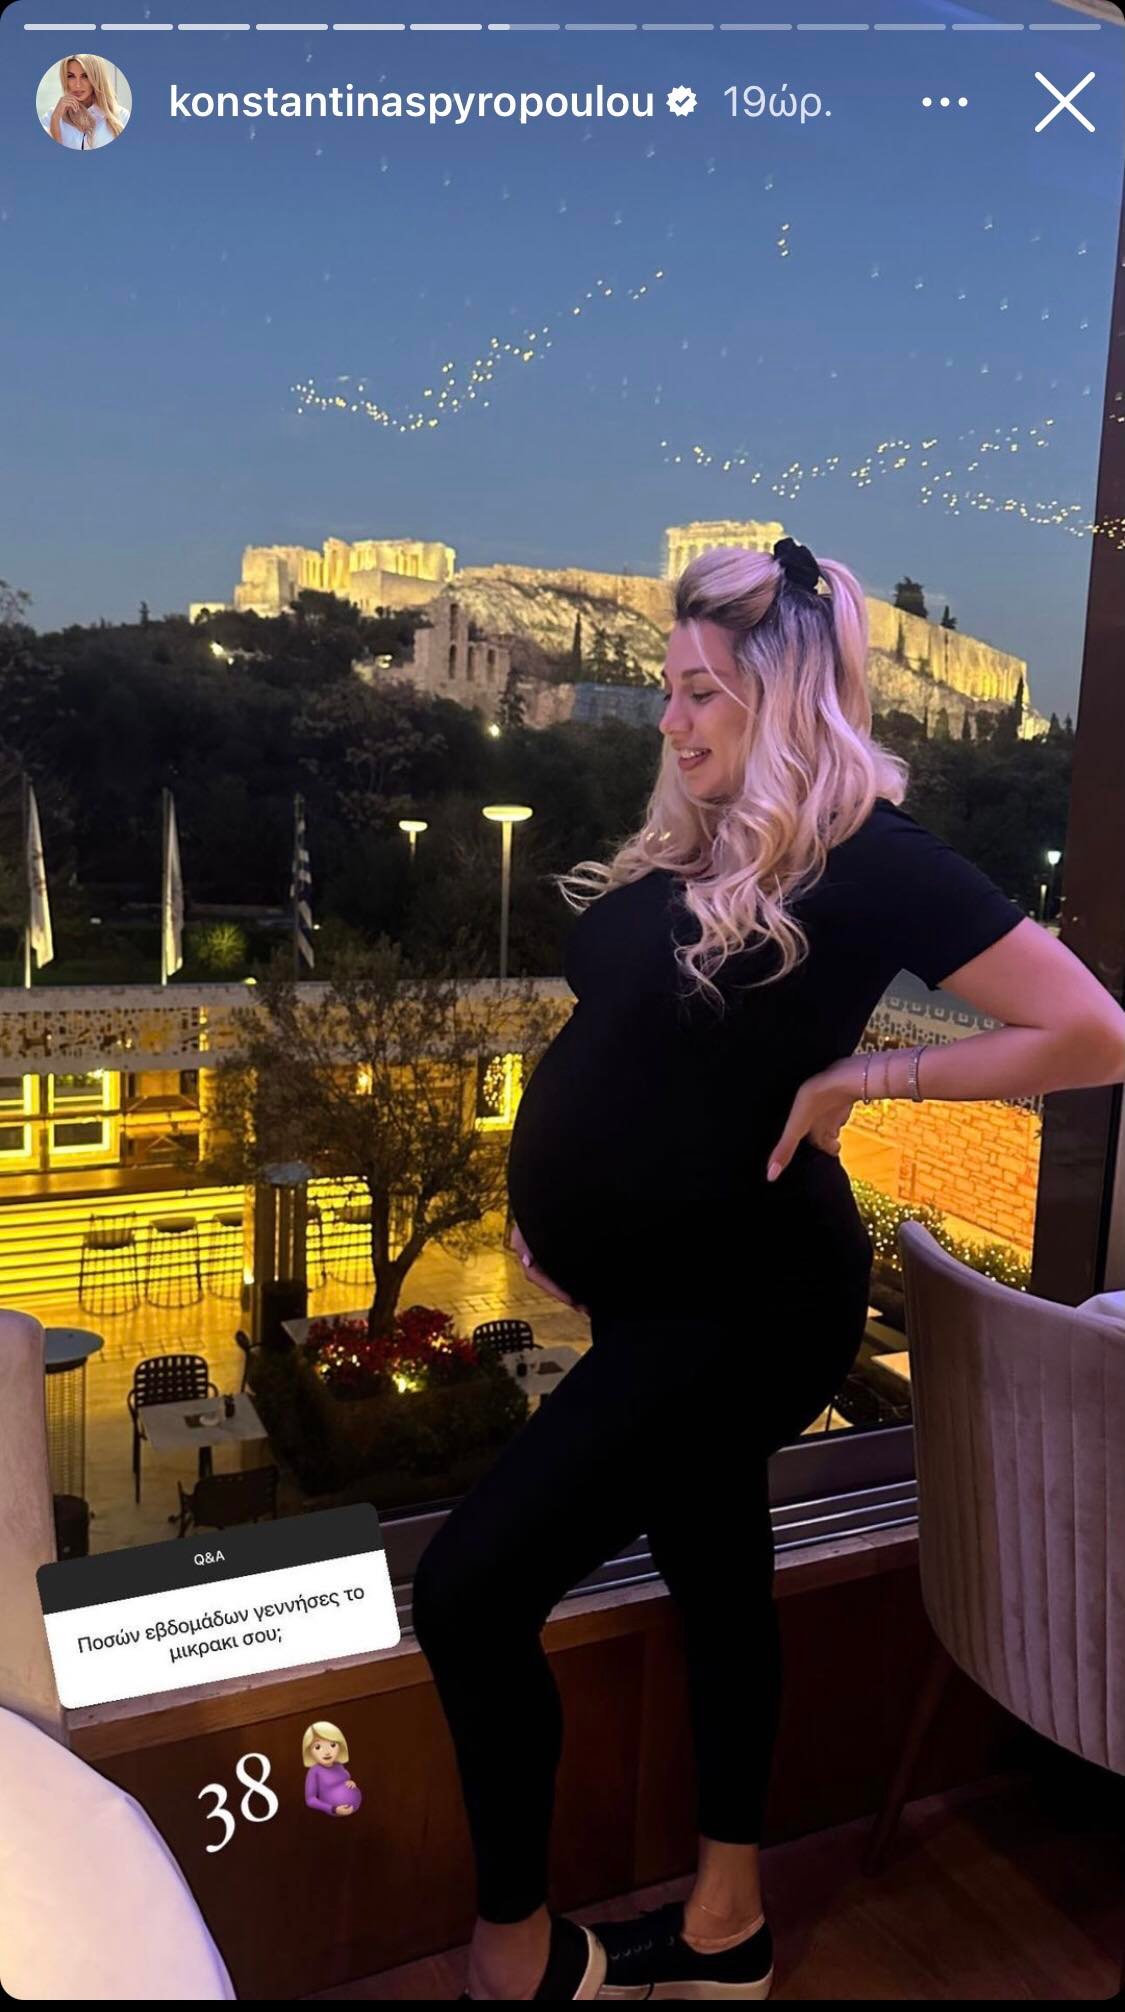 Κωνσταντίνα Σπυροπούλου: Οι μεταβολές στην ψυχολογία της μετά τον τοκετό, τα κιλά της εγκυμοσύνης και το ατύχημα